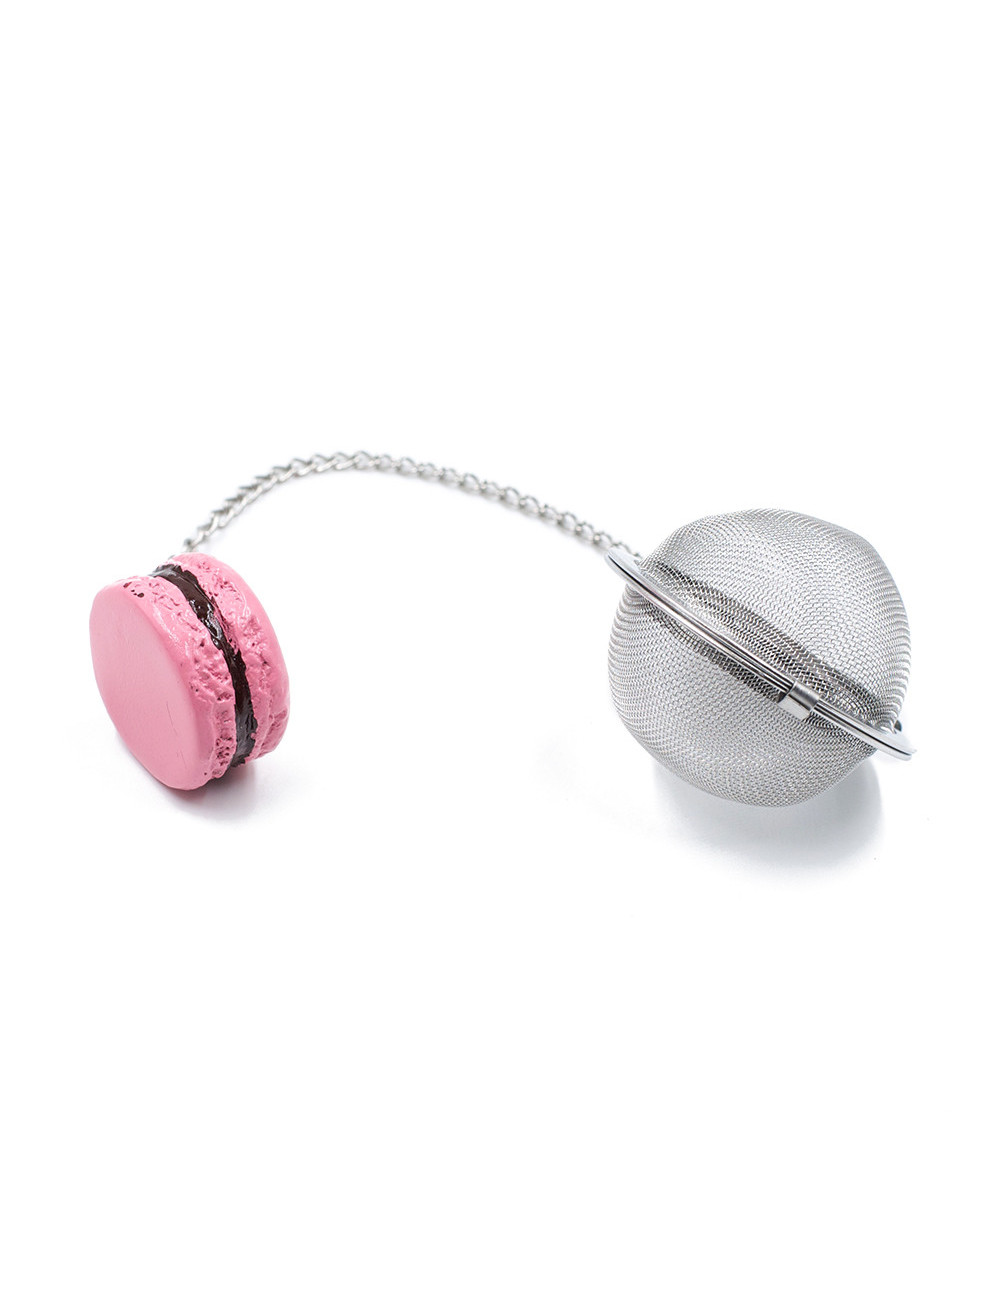 Filtro sfera Ø 5 cm in acciaio inox con ciondolo colorato - La Pianta del Tè negozio online